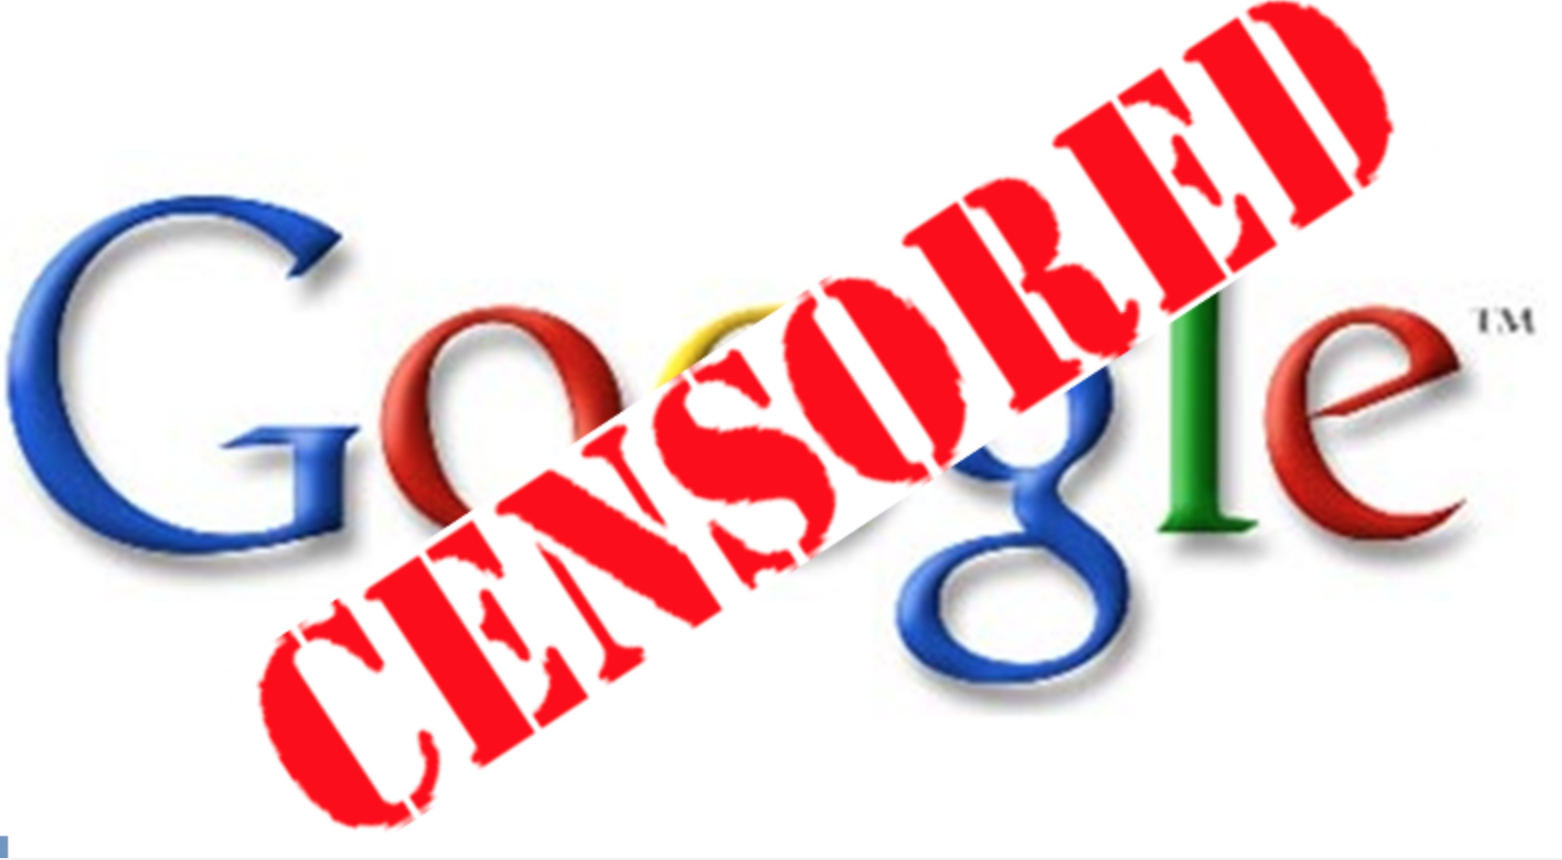 Shinigami Eyes, l’estensione di Google che censura chi critica gli Lgbt 1